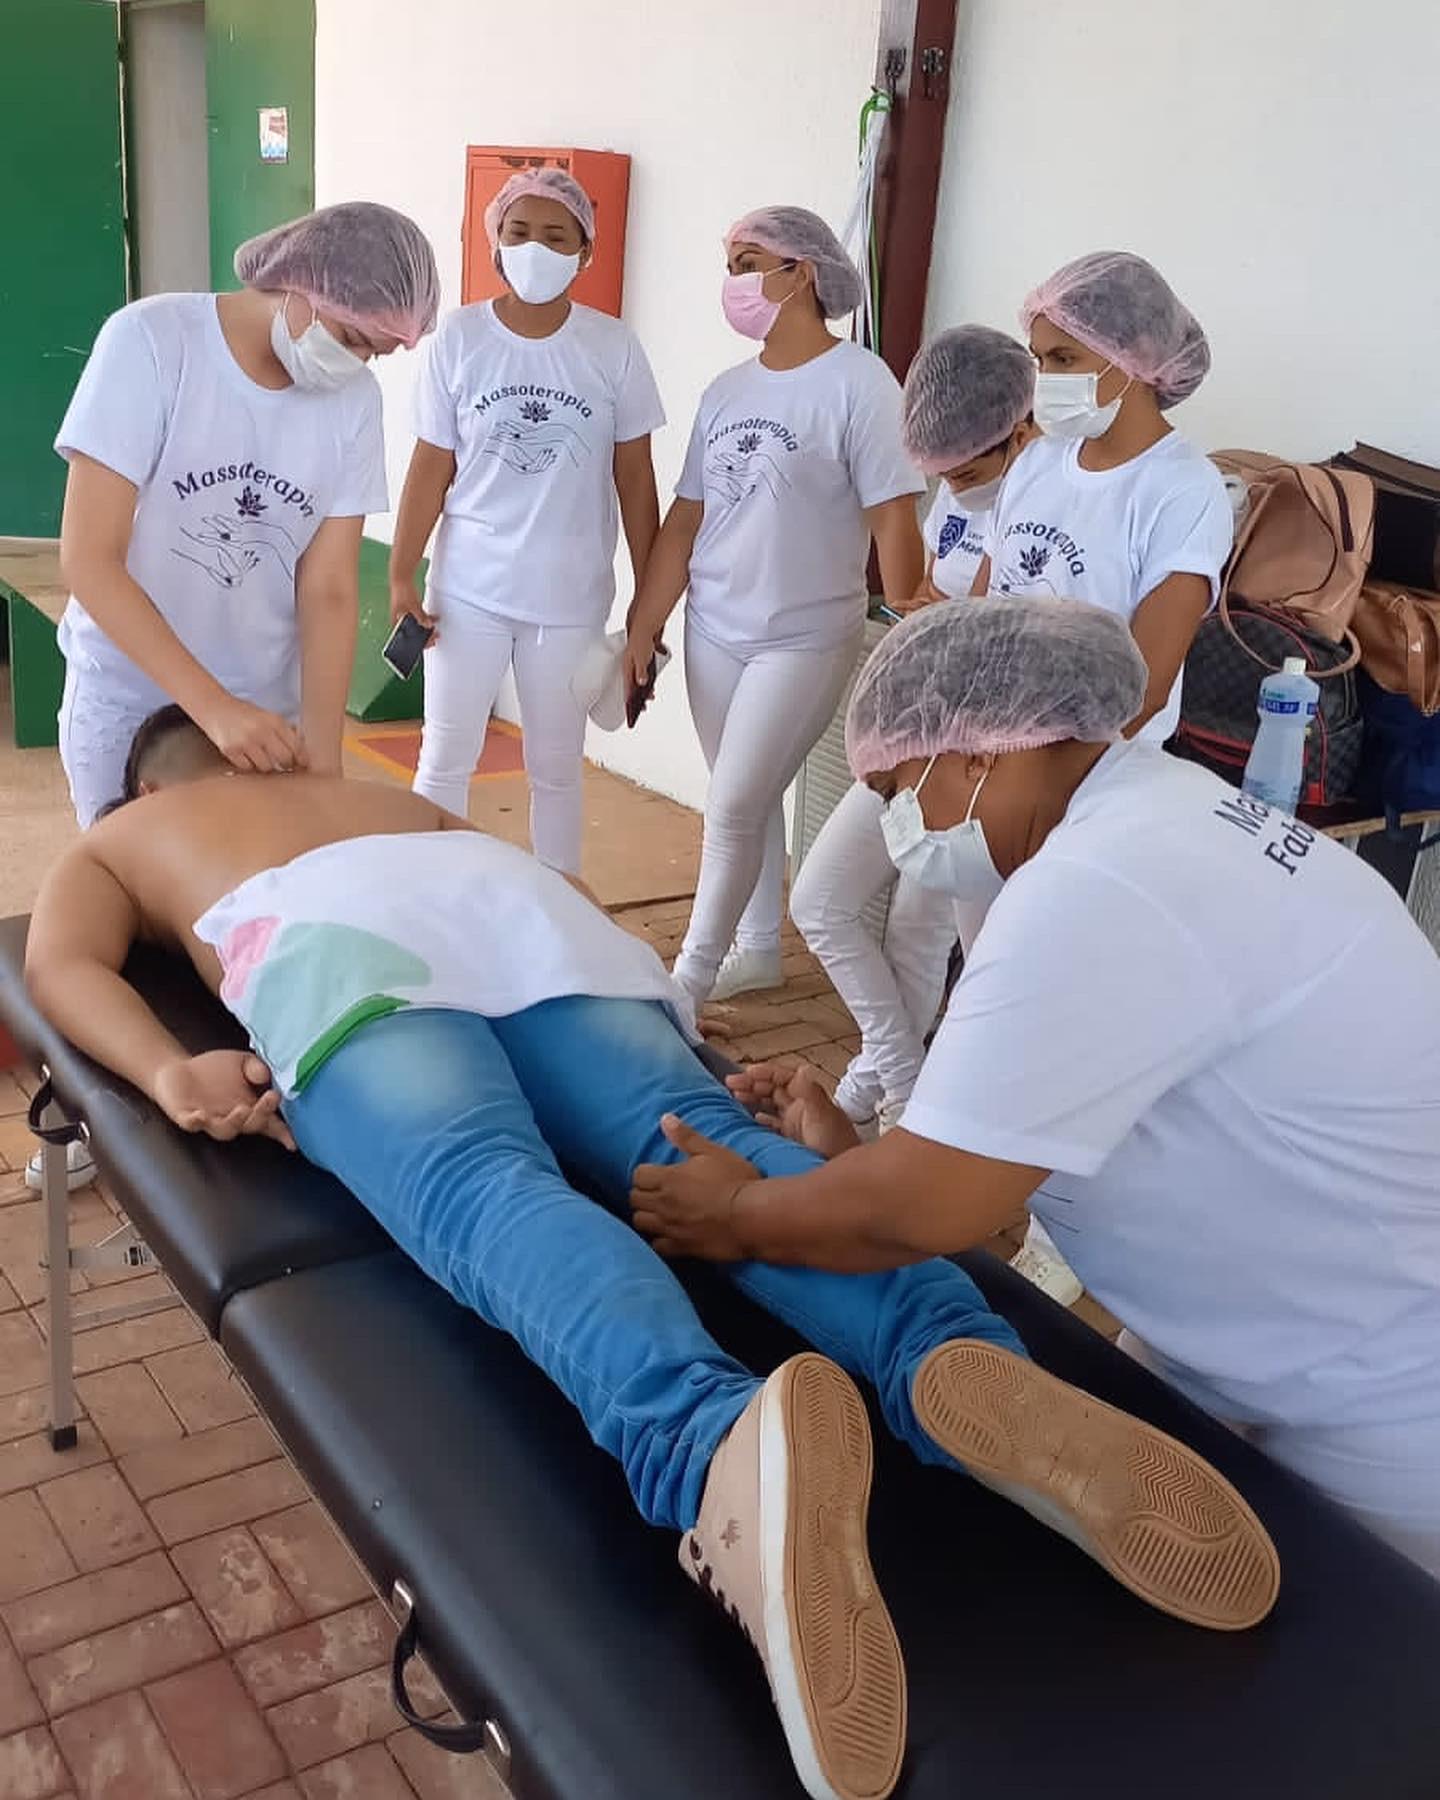 Grupo Madre Tereza oferece serviços de massoterapia aos alunos e funcionários do Instituto Federal do Amapá-IFAP